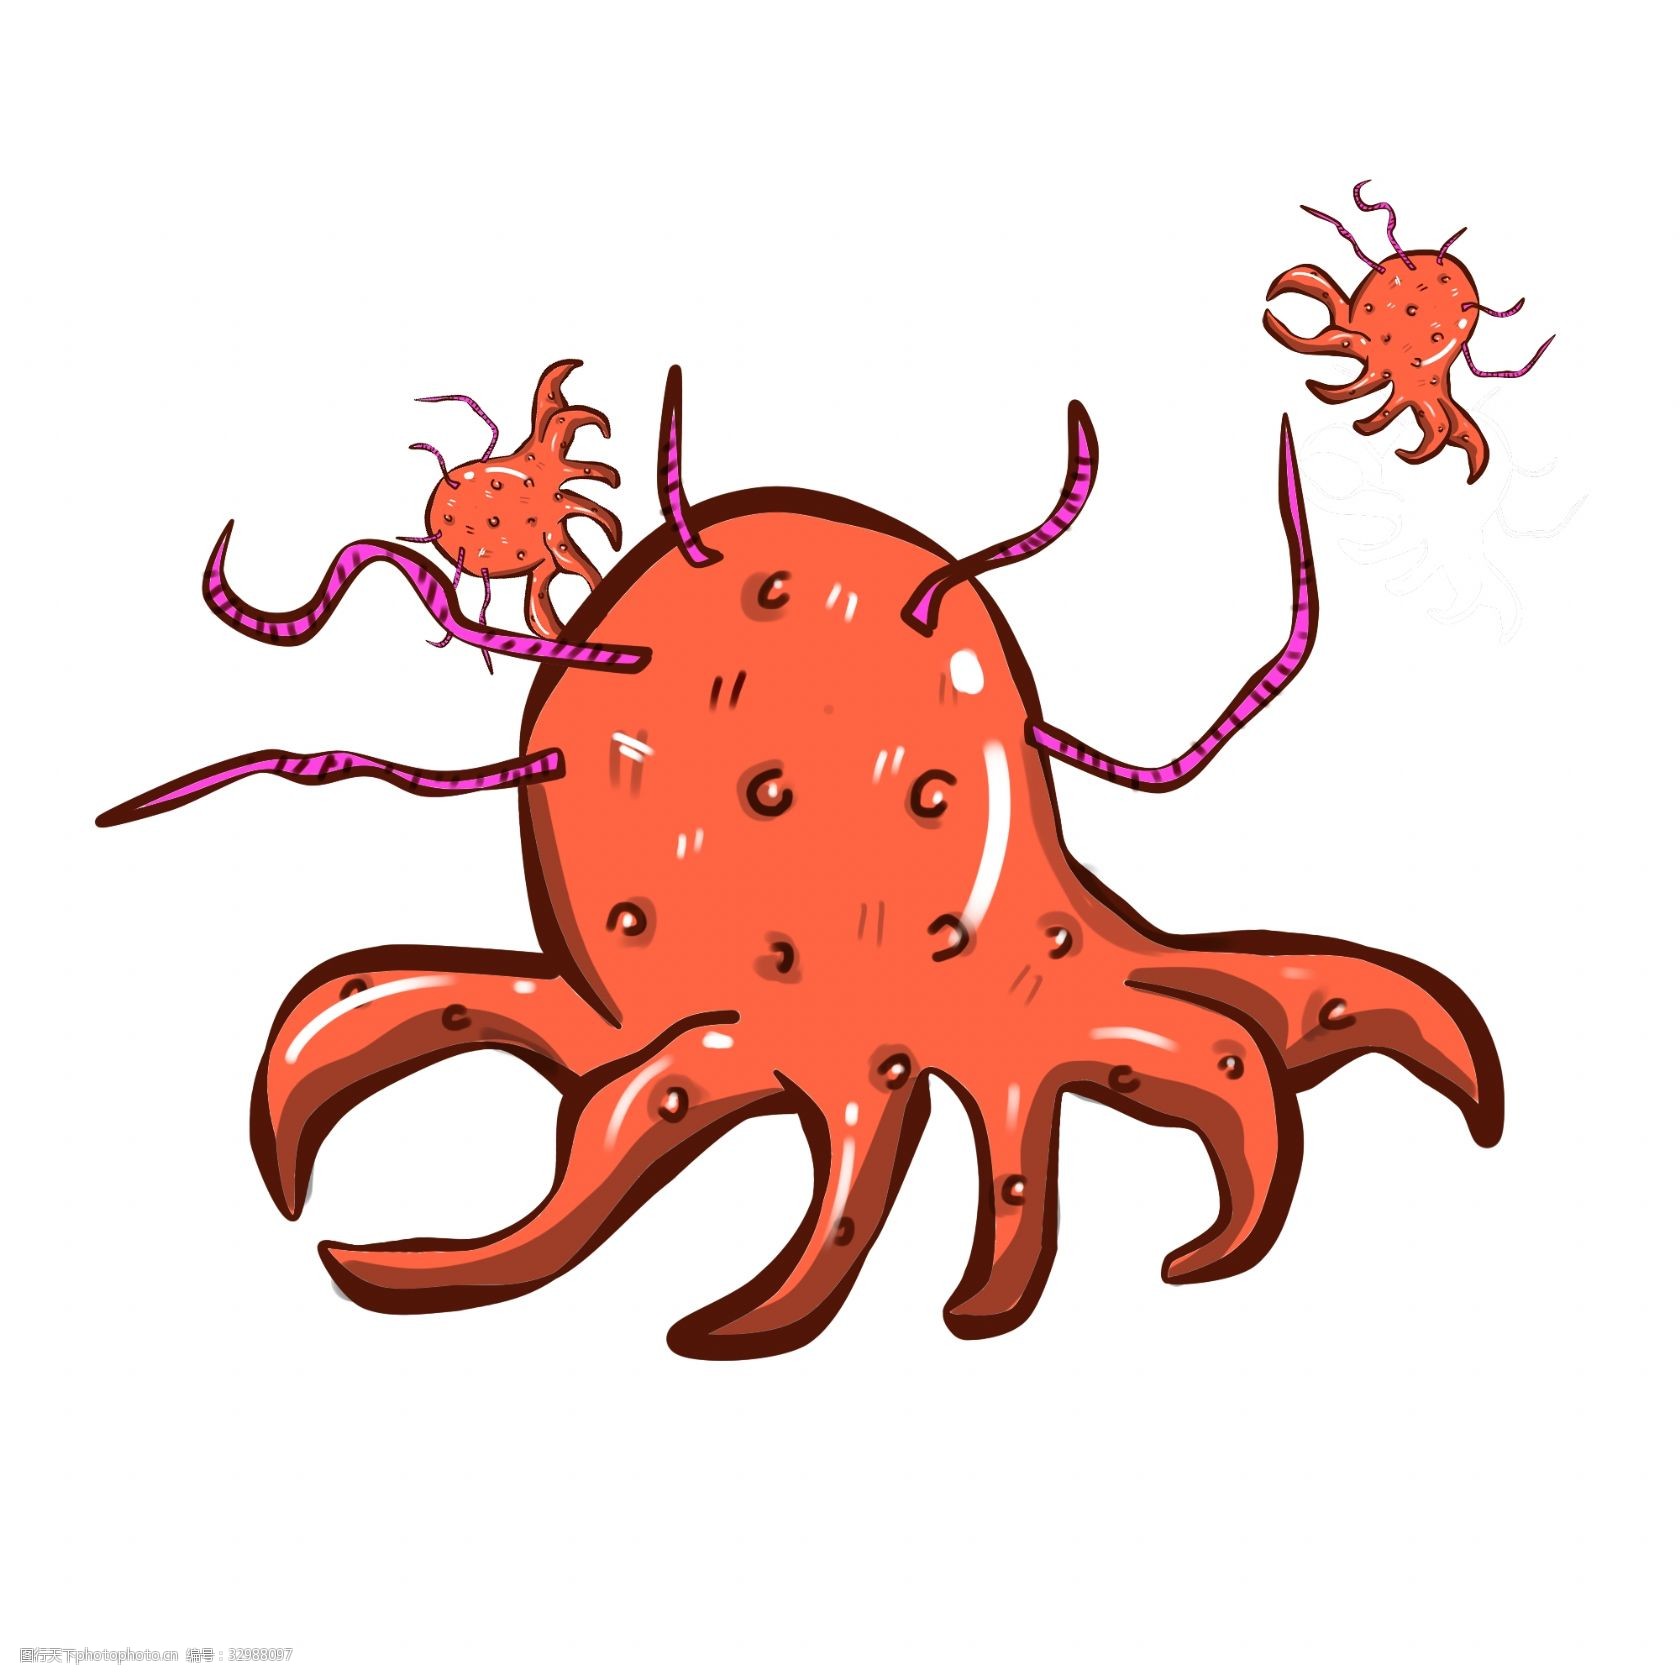 关键词:红色章鱼形状细菌 章鱼形状细菌 细菌插画 卡通细菌插画 红色